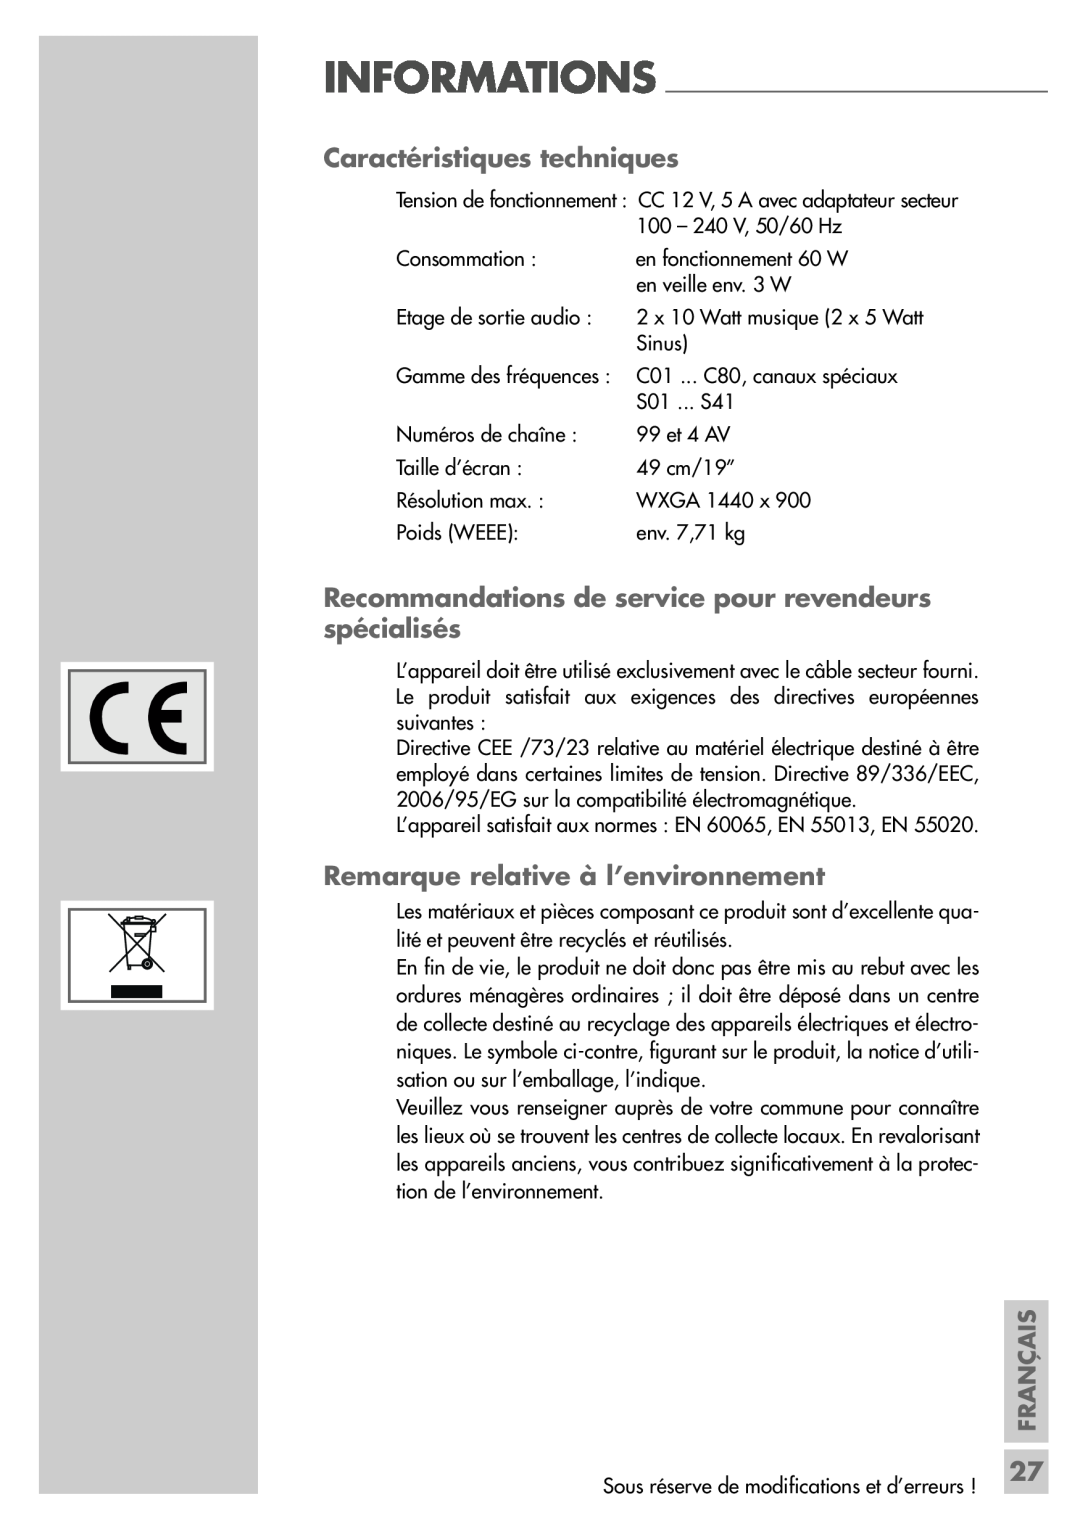 Grundig LW49-7710BS manual Caractéristiques techniques, Recommandations de service pour revendeurs spécialisés, Français 